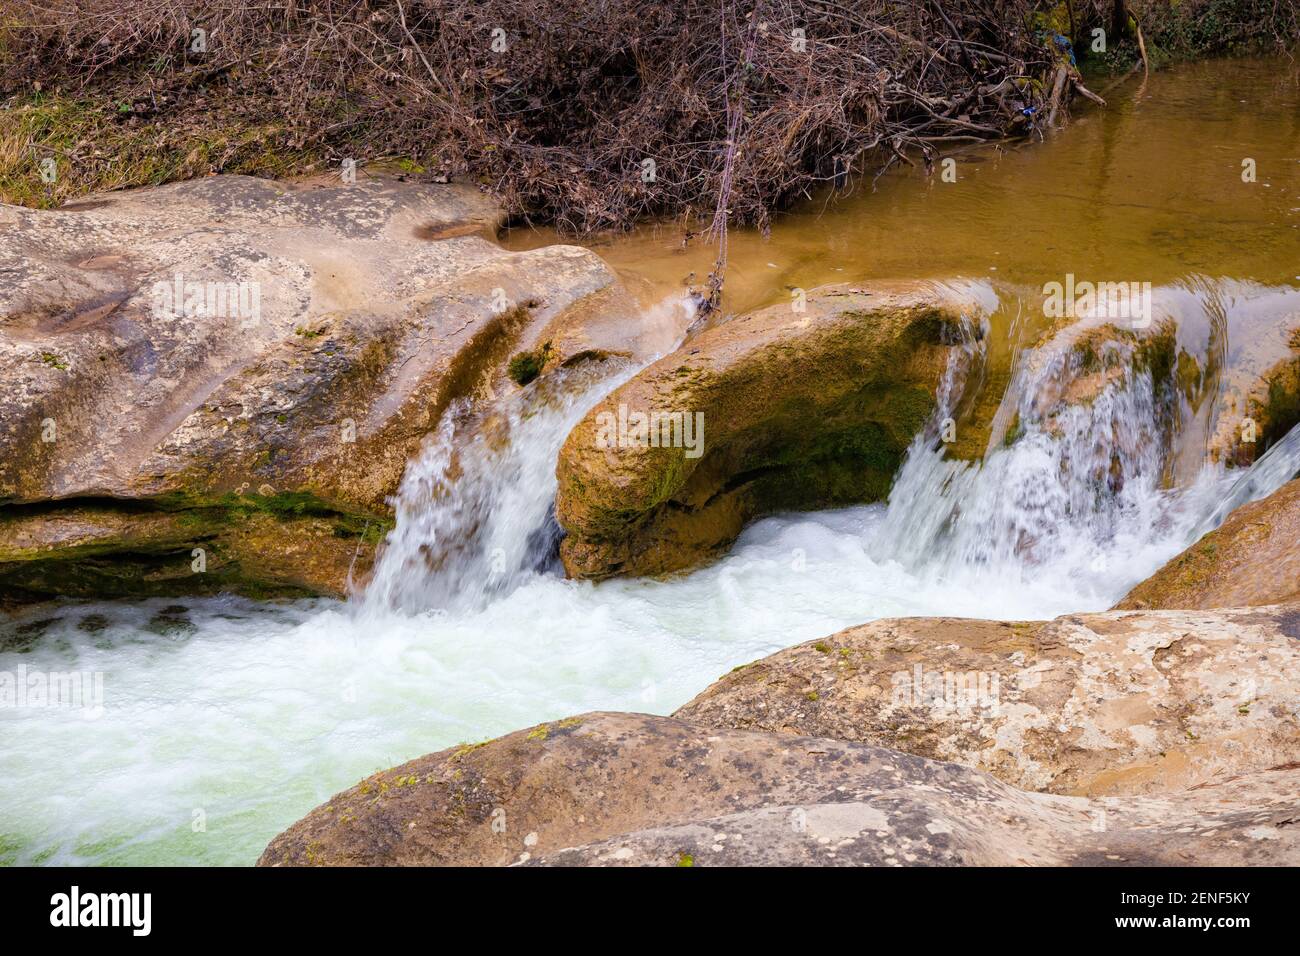 Blick auf einen Pool des Flusses Merles, der in seinen Felsen die Abnutzung von vielen Jahren des Wasserflusses präsentiert. Sta. Maria de Merles, Katalonien, Spanien Stockfoto